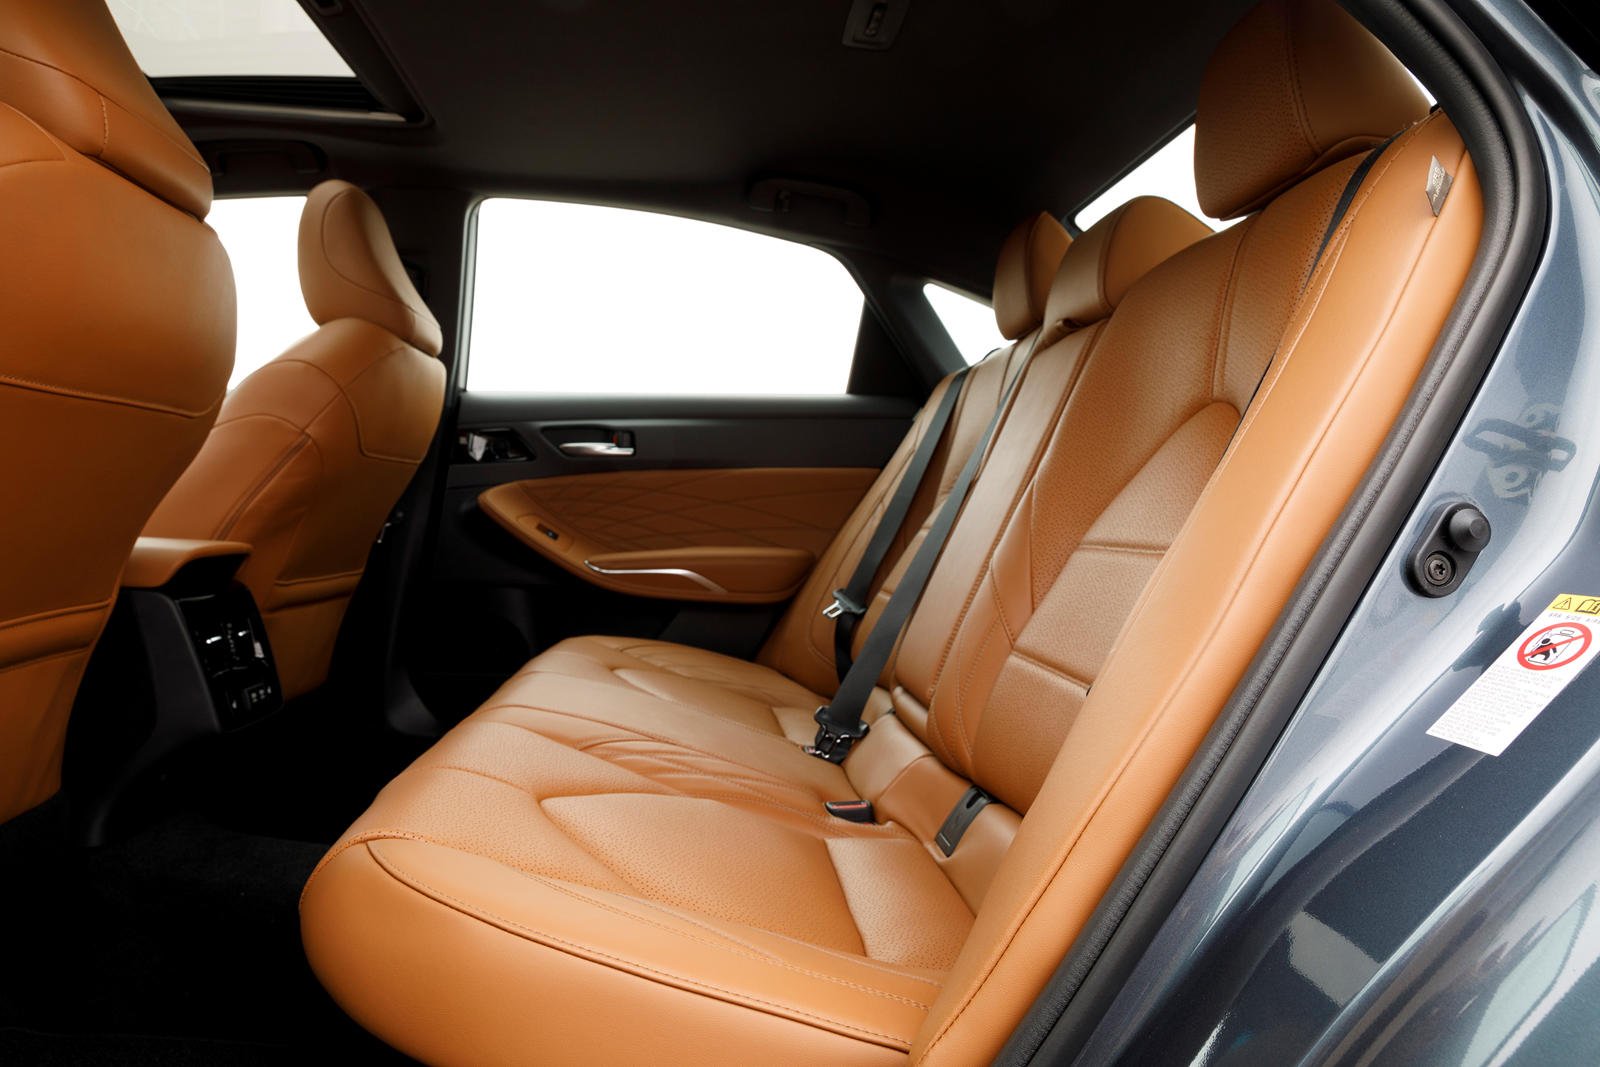 Toyota Avalon interior - Seats